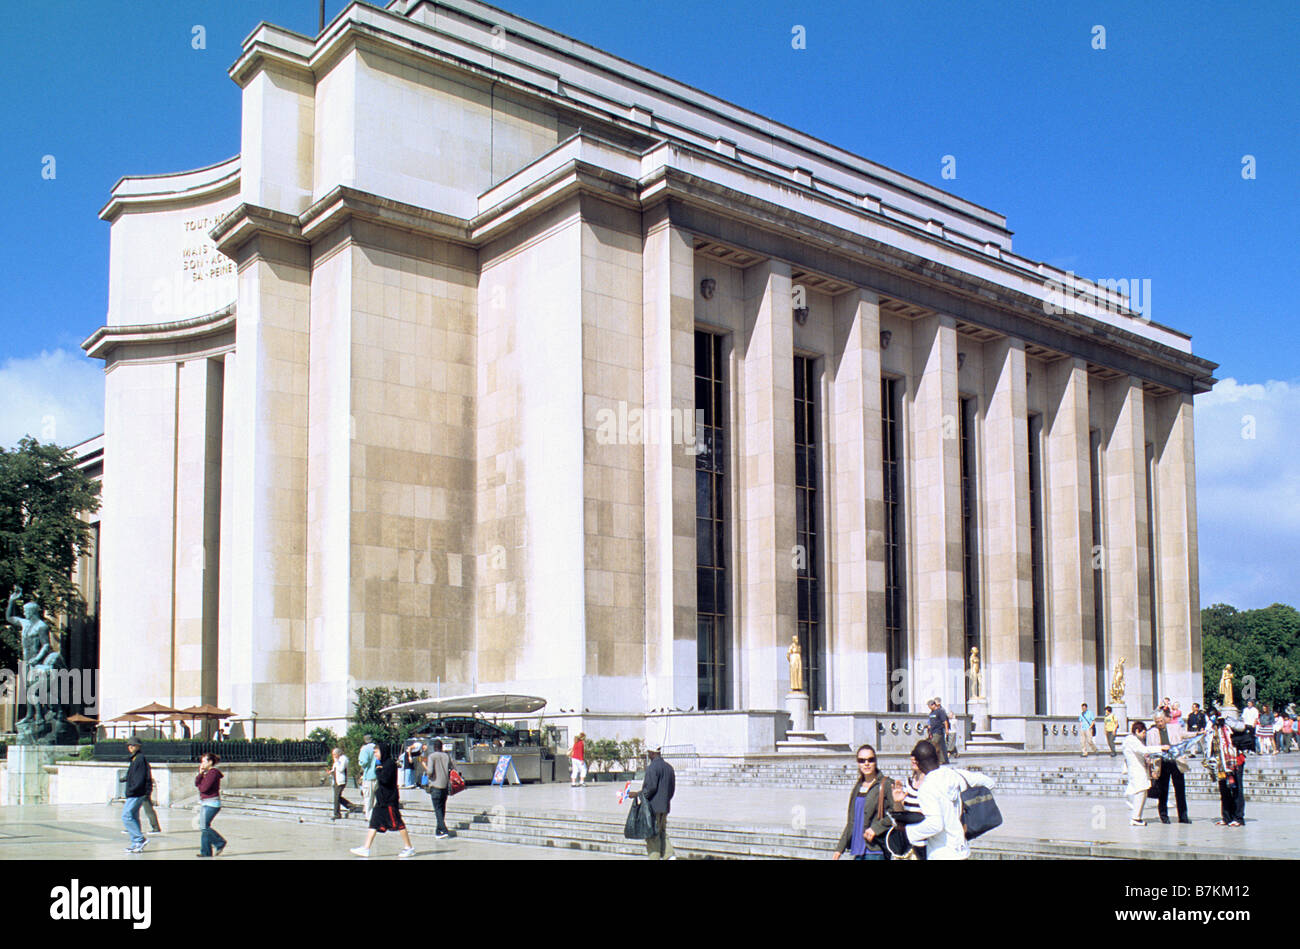 Paris, Palais de Chaillot, north elevation of west wing, Stock Photo